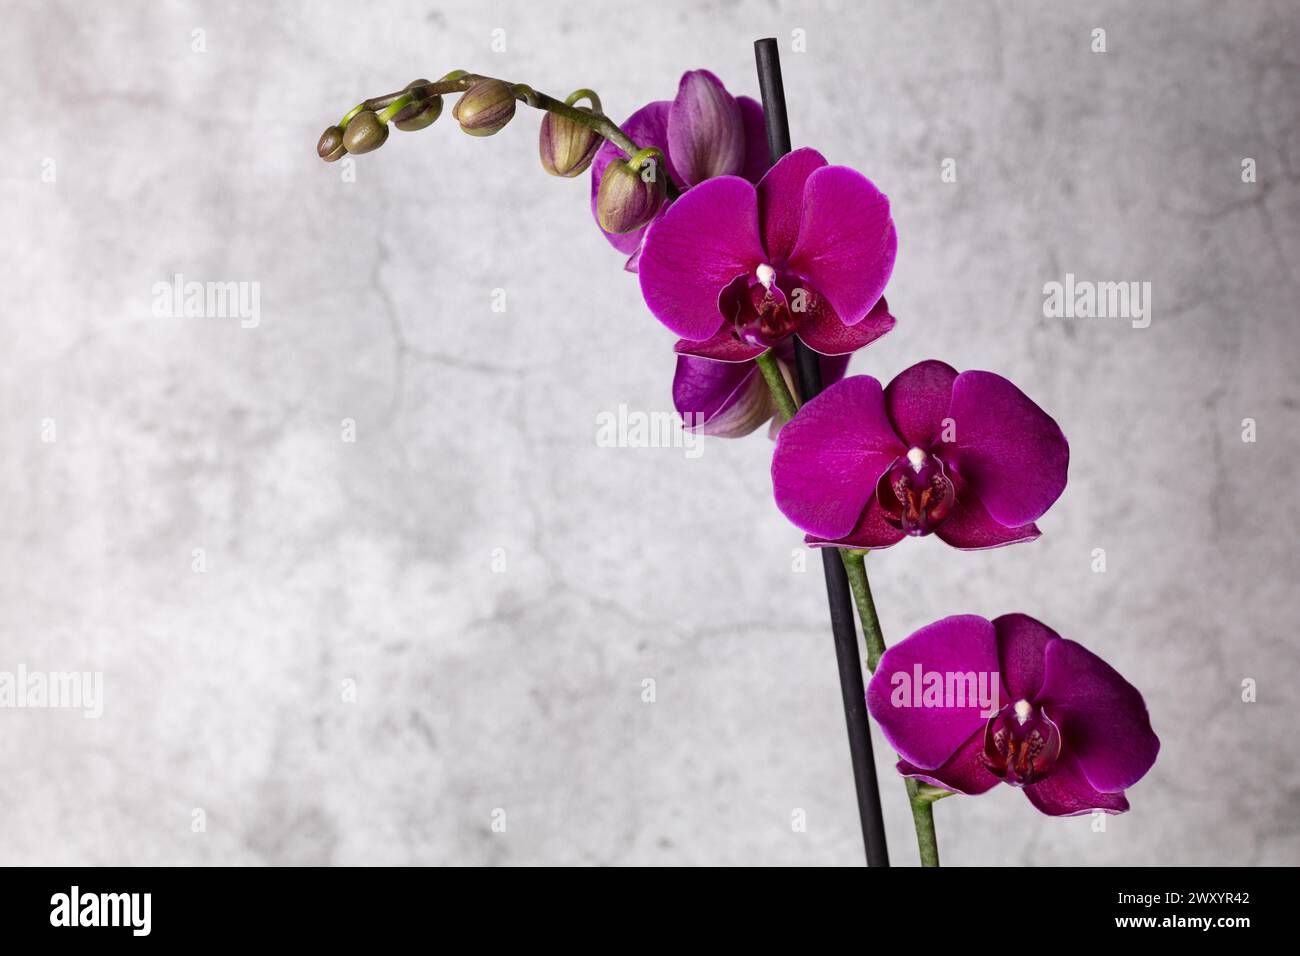 Immagine fotografica dell'orchidea Phalaenopis di più fiori viola su uno sfondo grigio/bianco macchiato con gemme in formato orizzontale, copia spazio Foto Stock